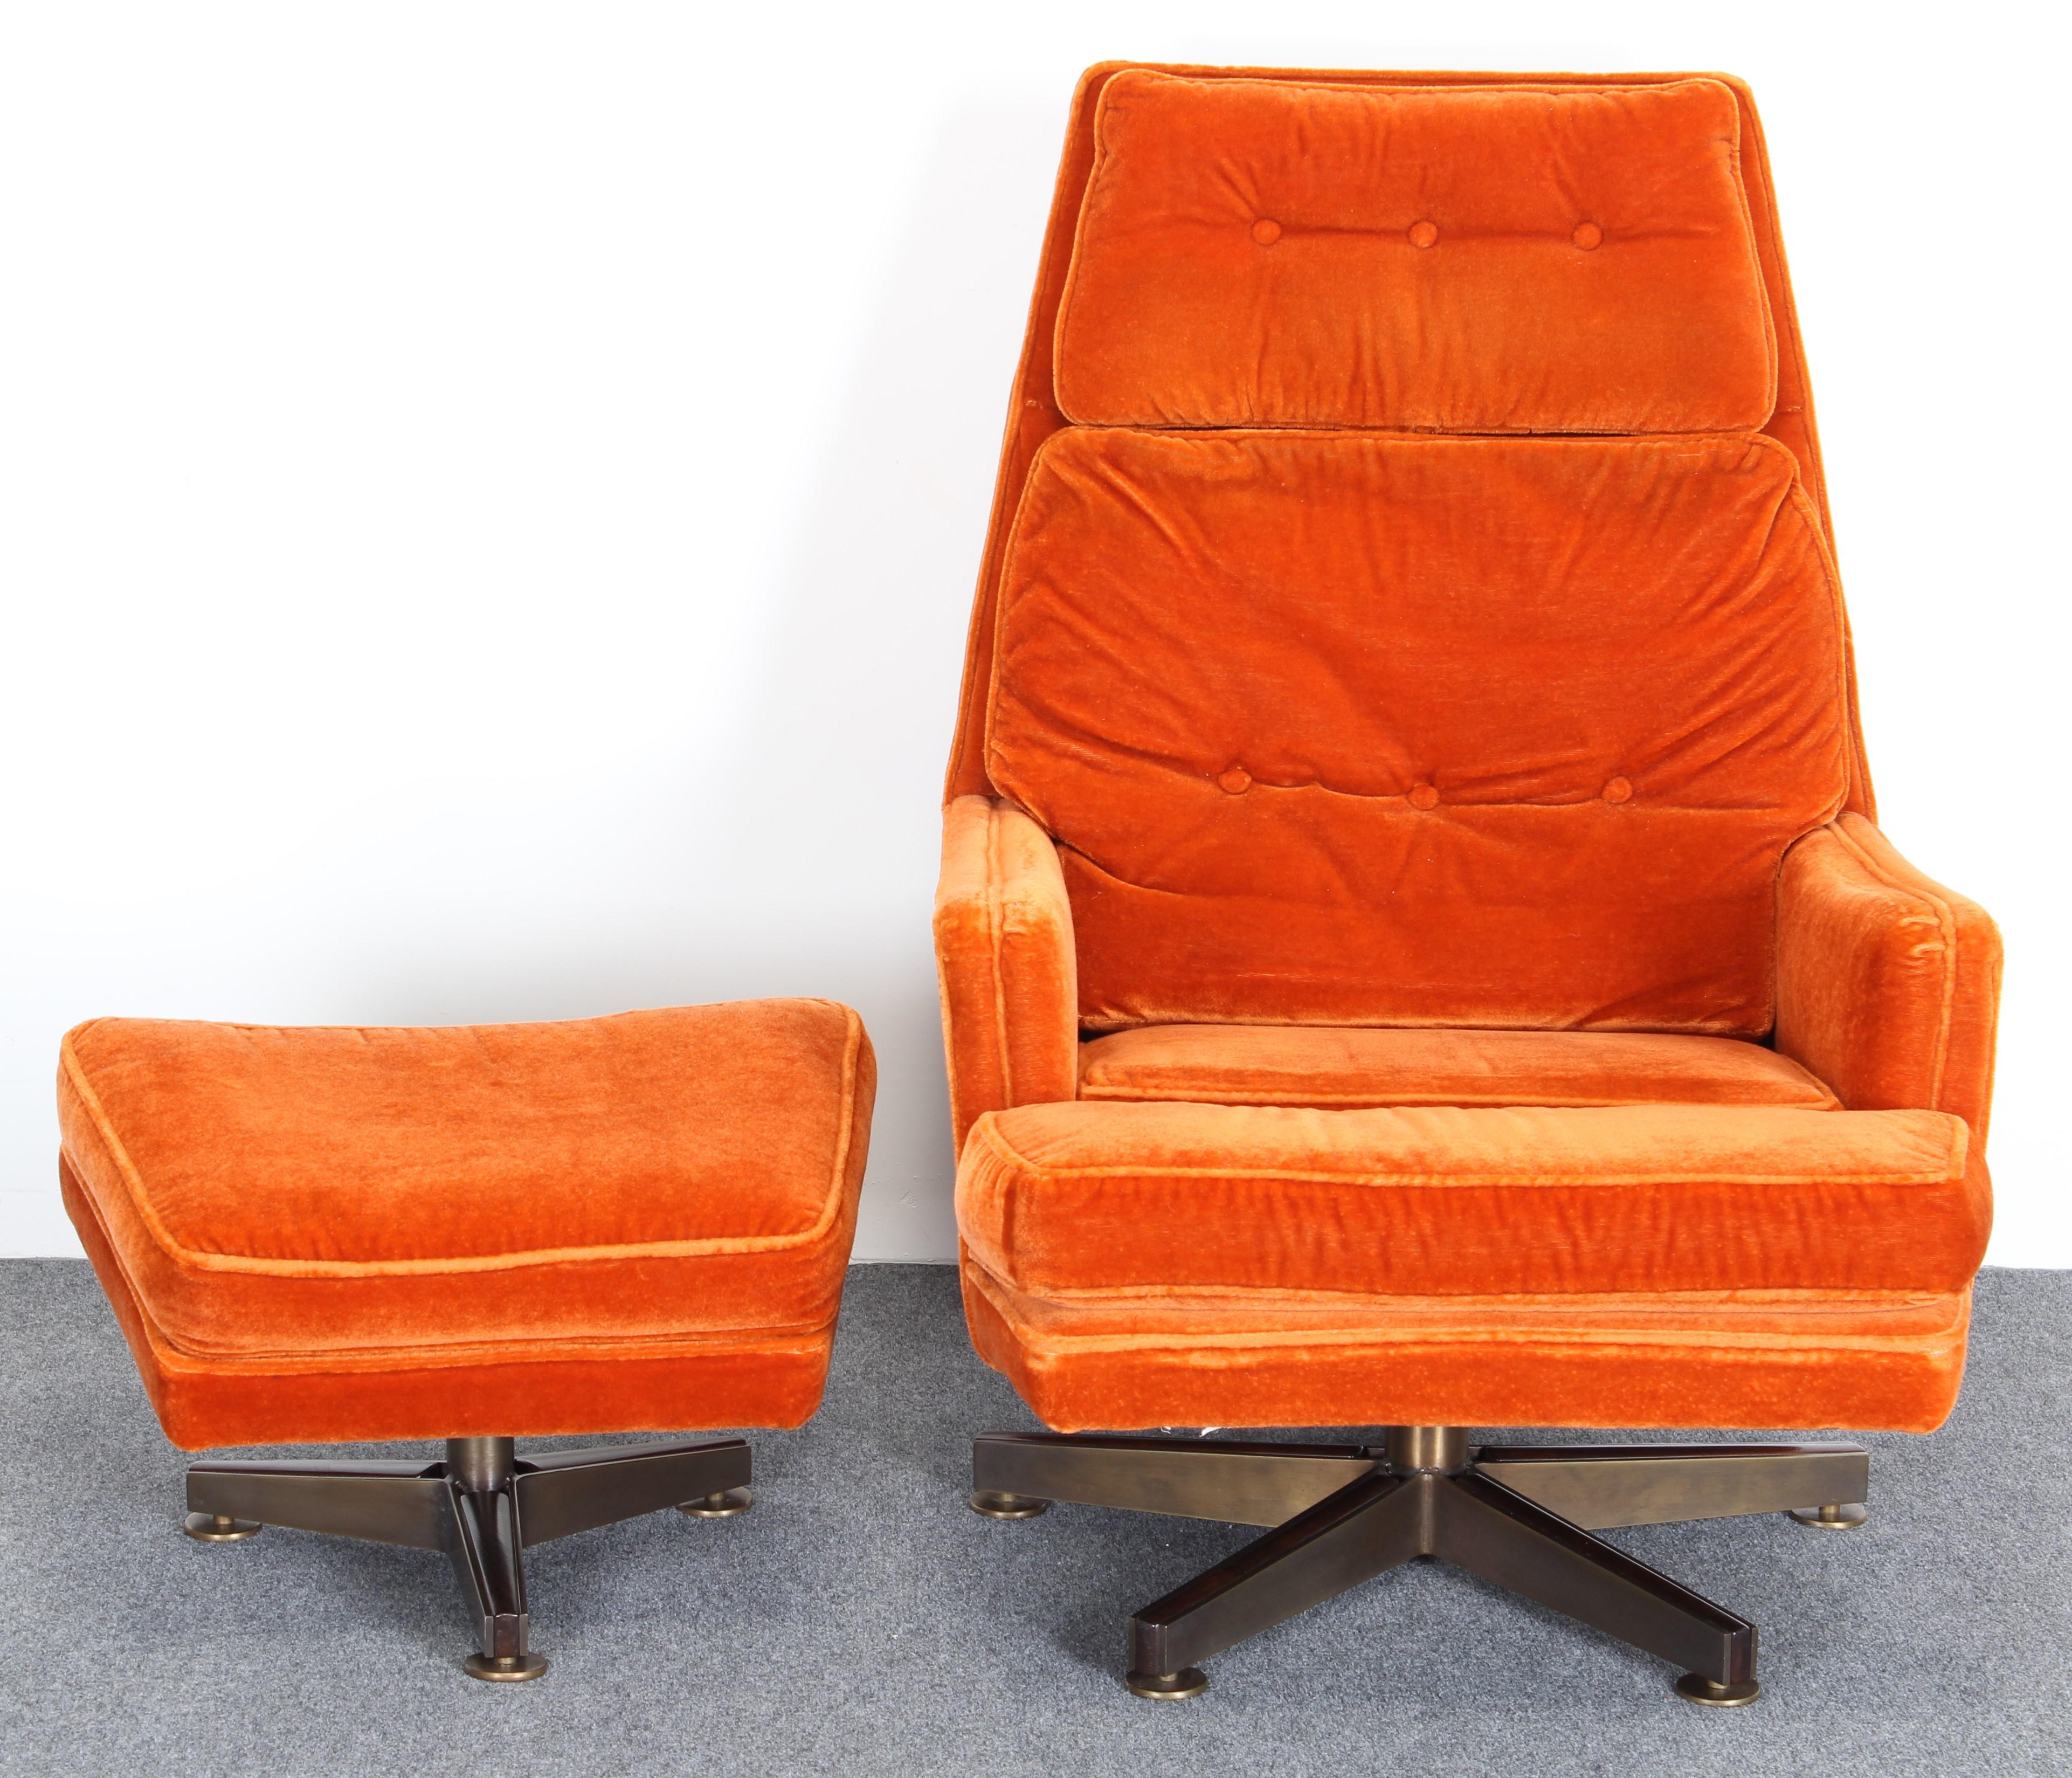 Chaise longue pivotante et ottomane confortable et élégante d'Edward Wormley pour Dunbar, 1960. La chaise et l'ottomane ont des bases tripodes pivotantes en bronze et en bois de rose. Le tissu est d'origine et présente une certaine usure due à l'âge